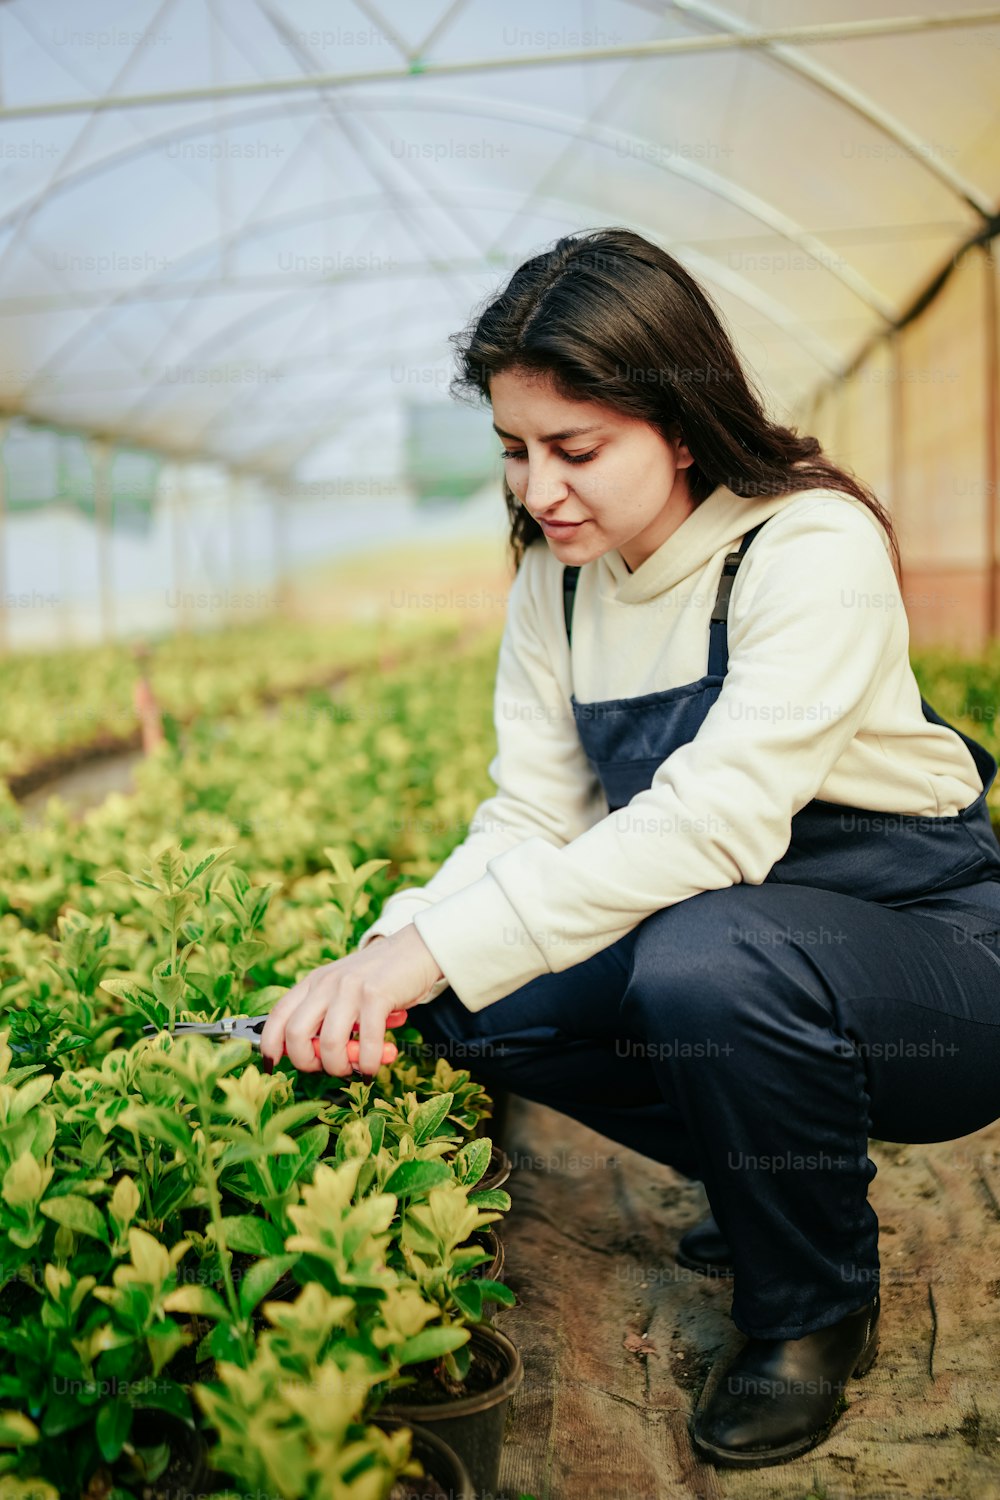 Una mujer arrodillada en un invernadero cortando plantas